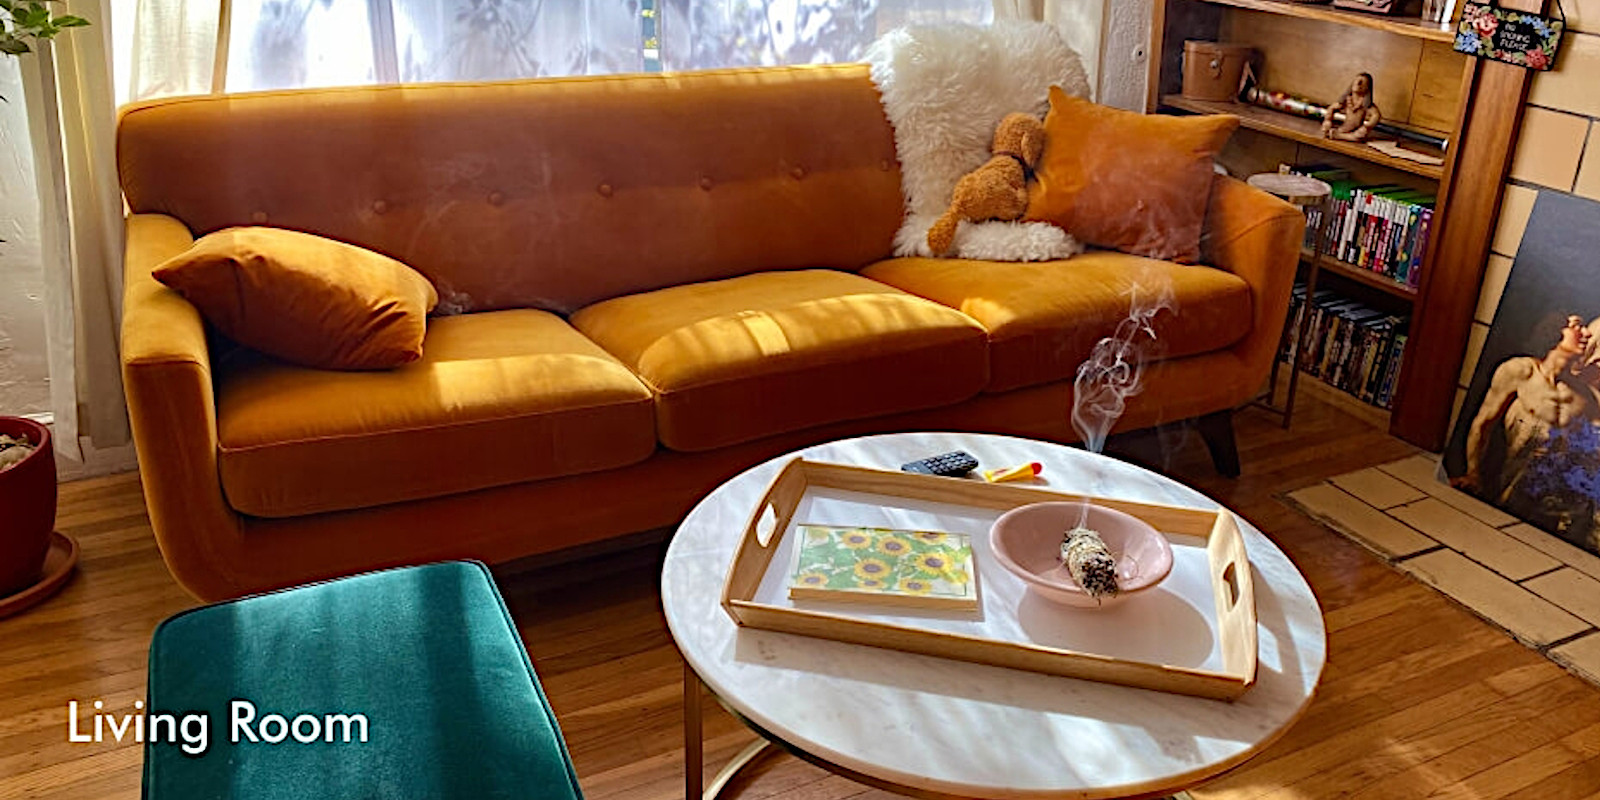 Livingroom furniture economical price